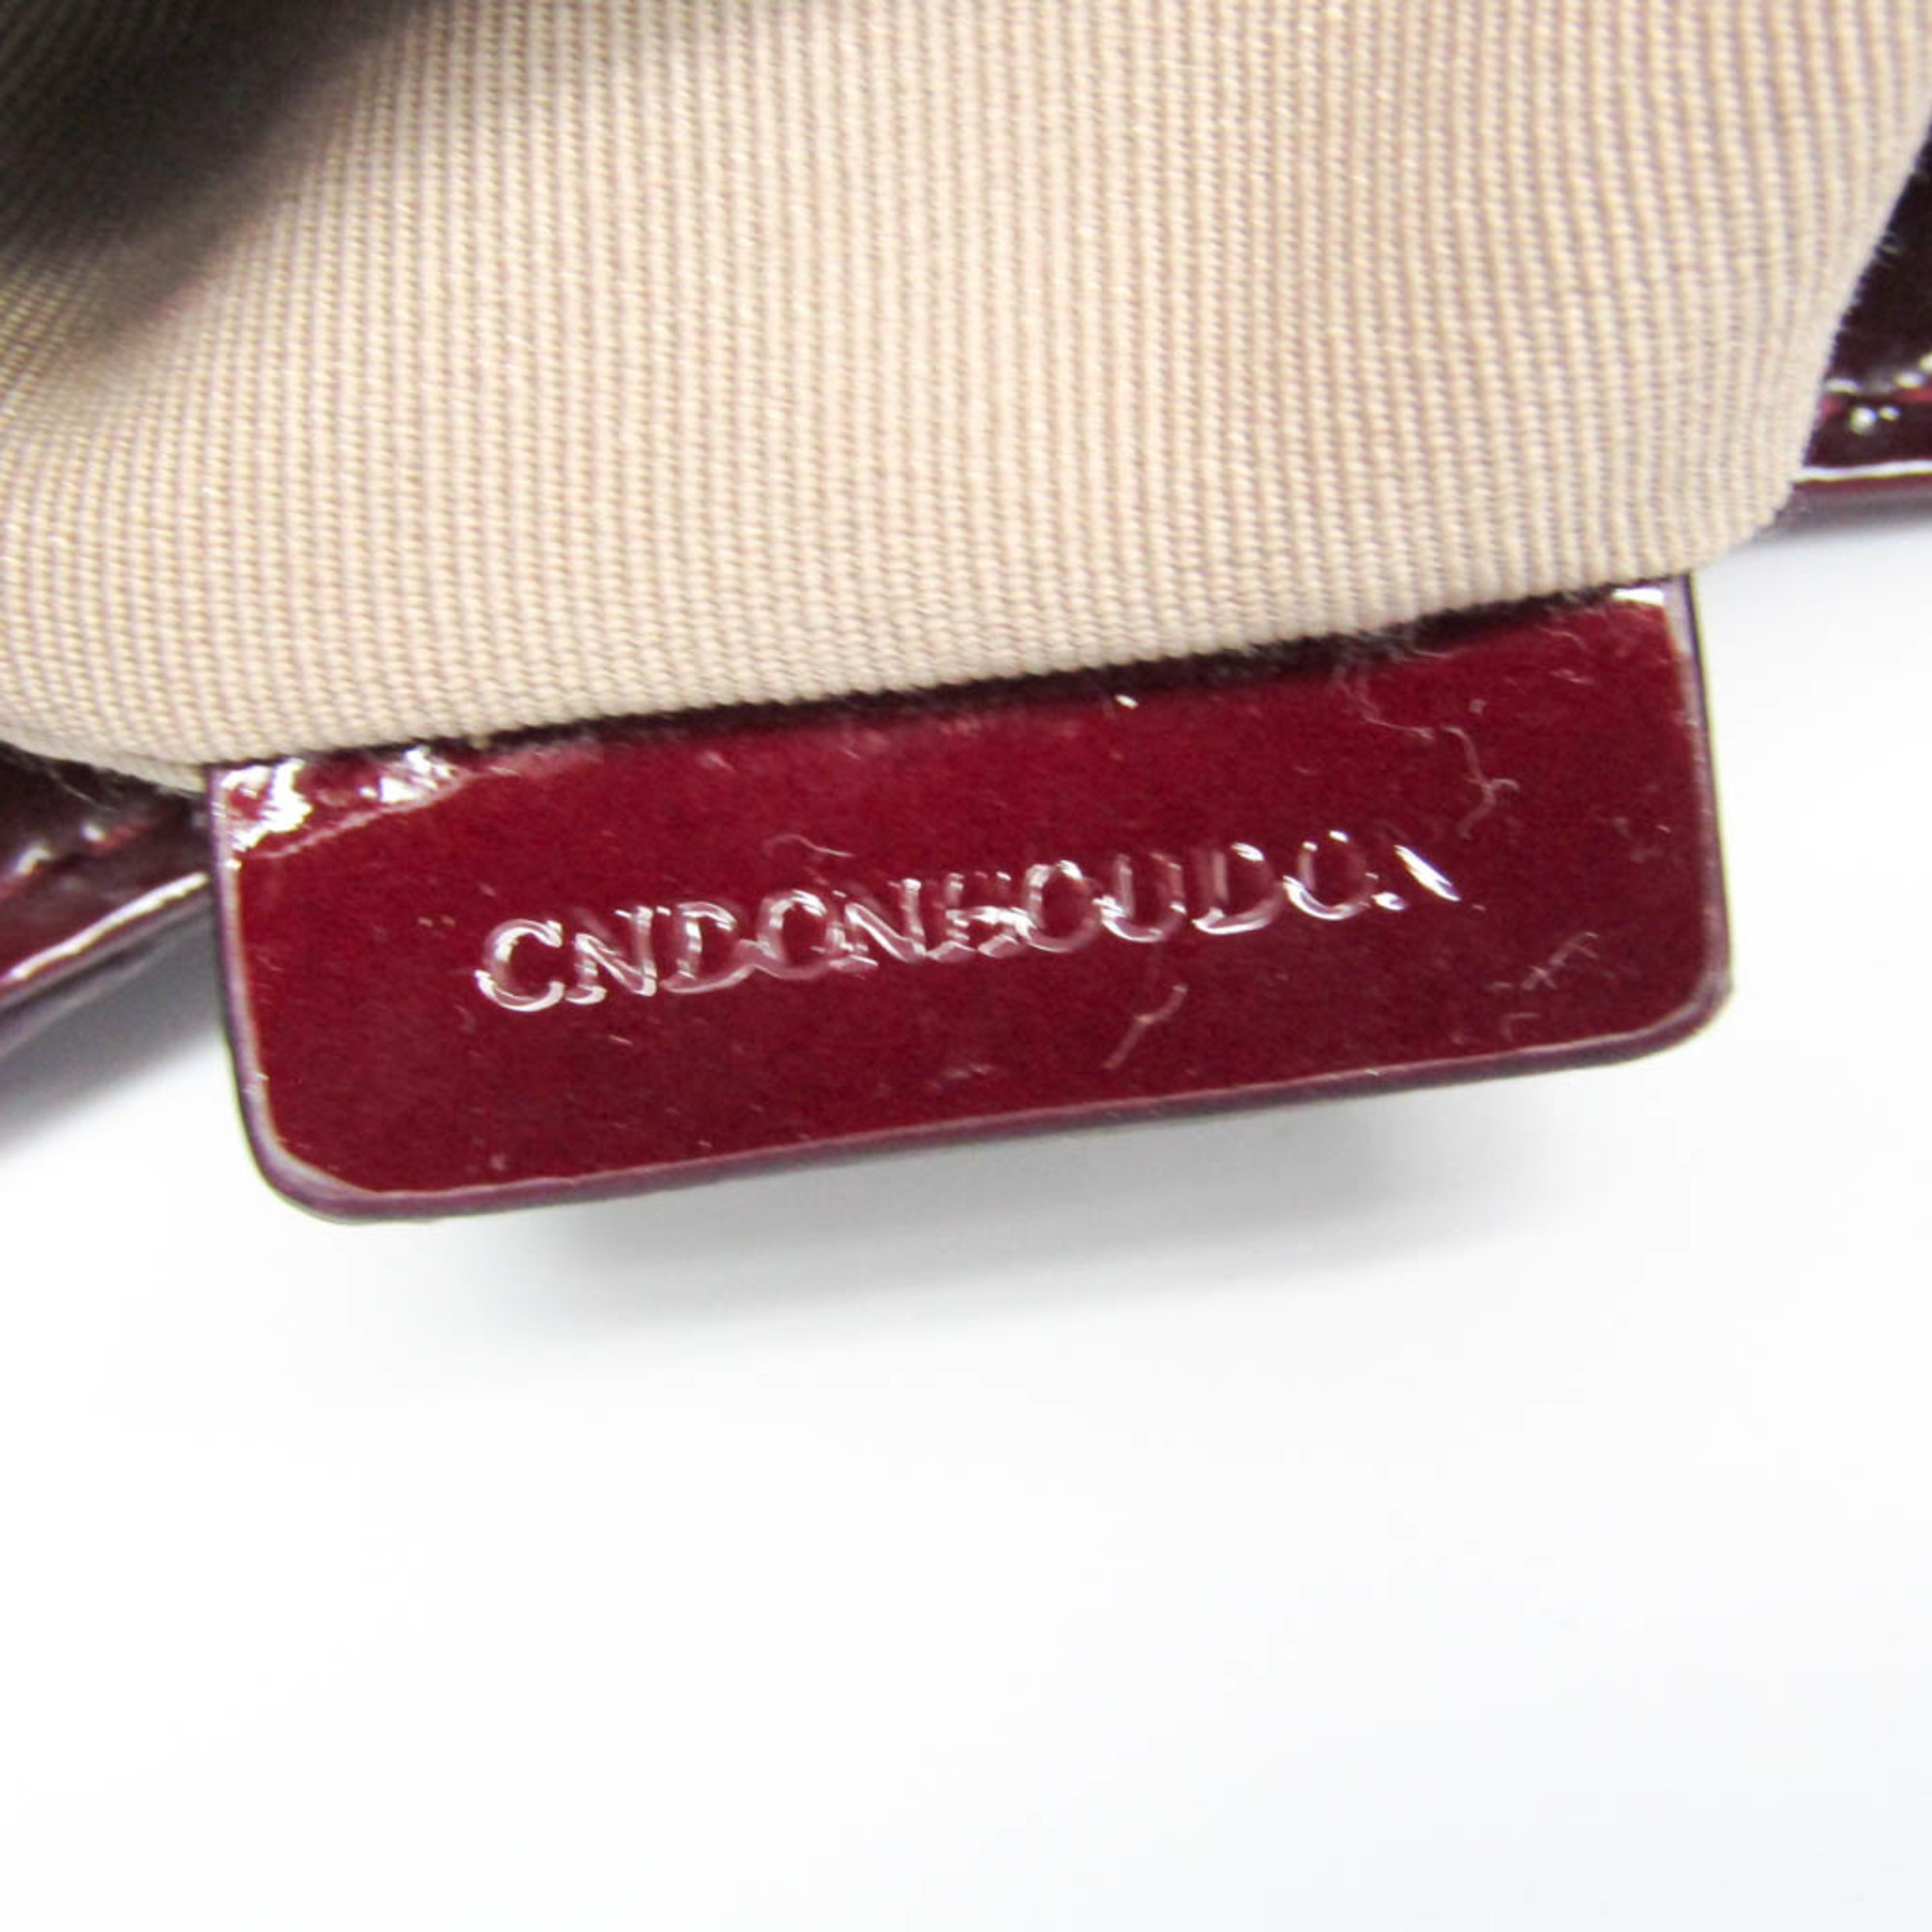 Burberry 3694424 Women's PVC,Patent Leather Shoulder Bag Beige,Bordeaux